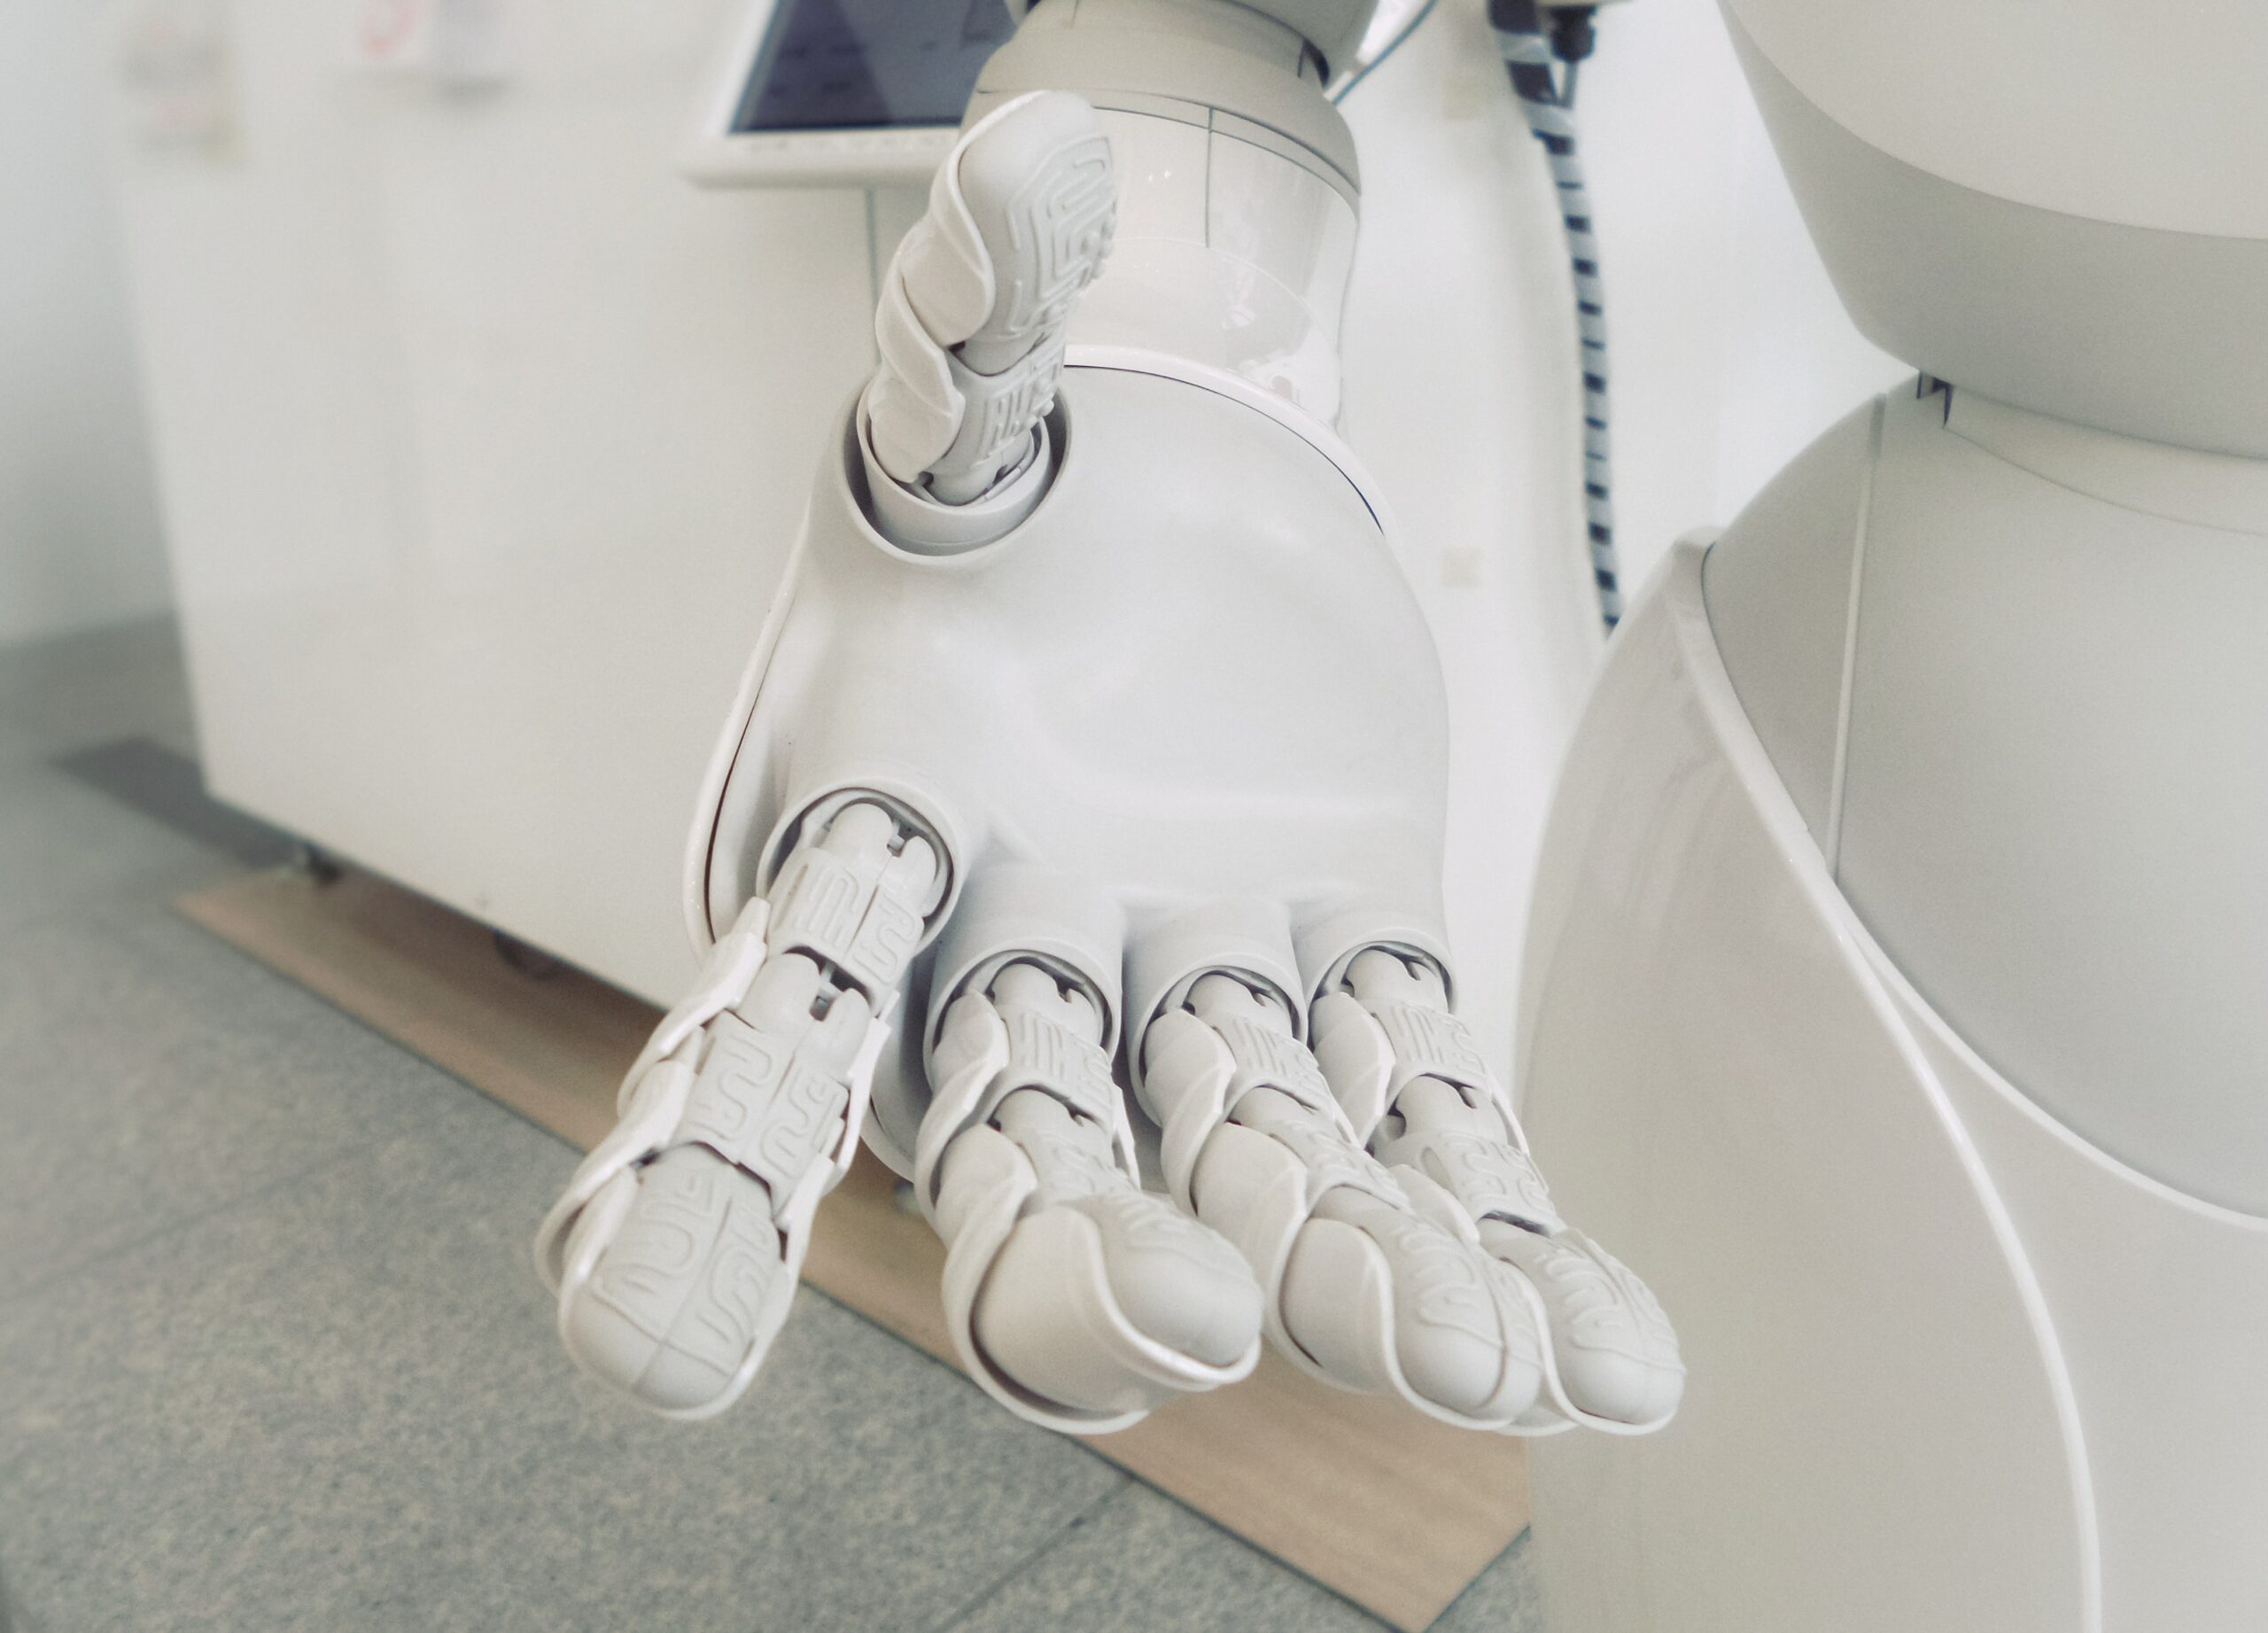 Robotics in Healthcare: AI Robotics Use Cases in Healthcare